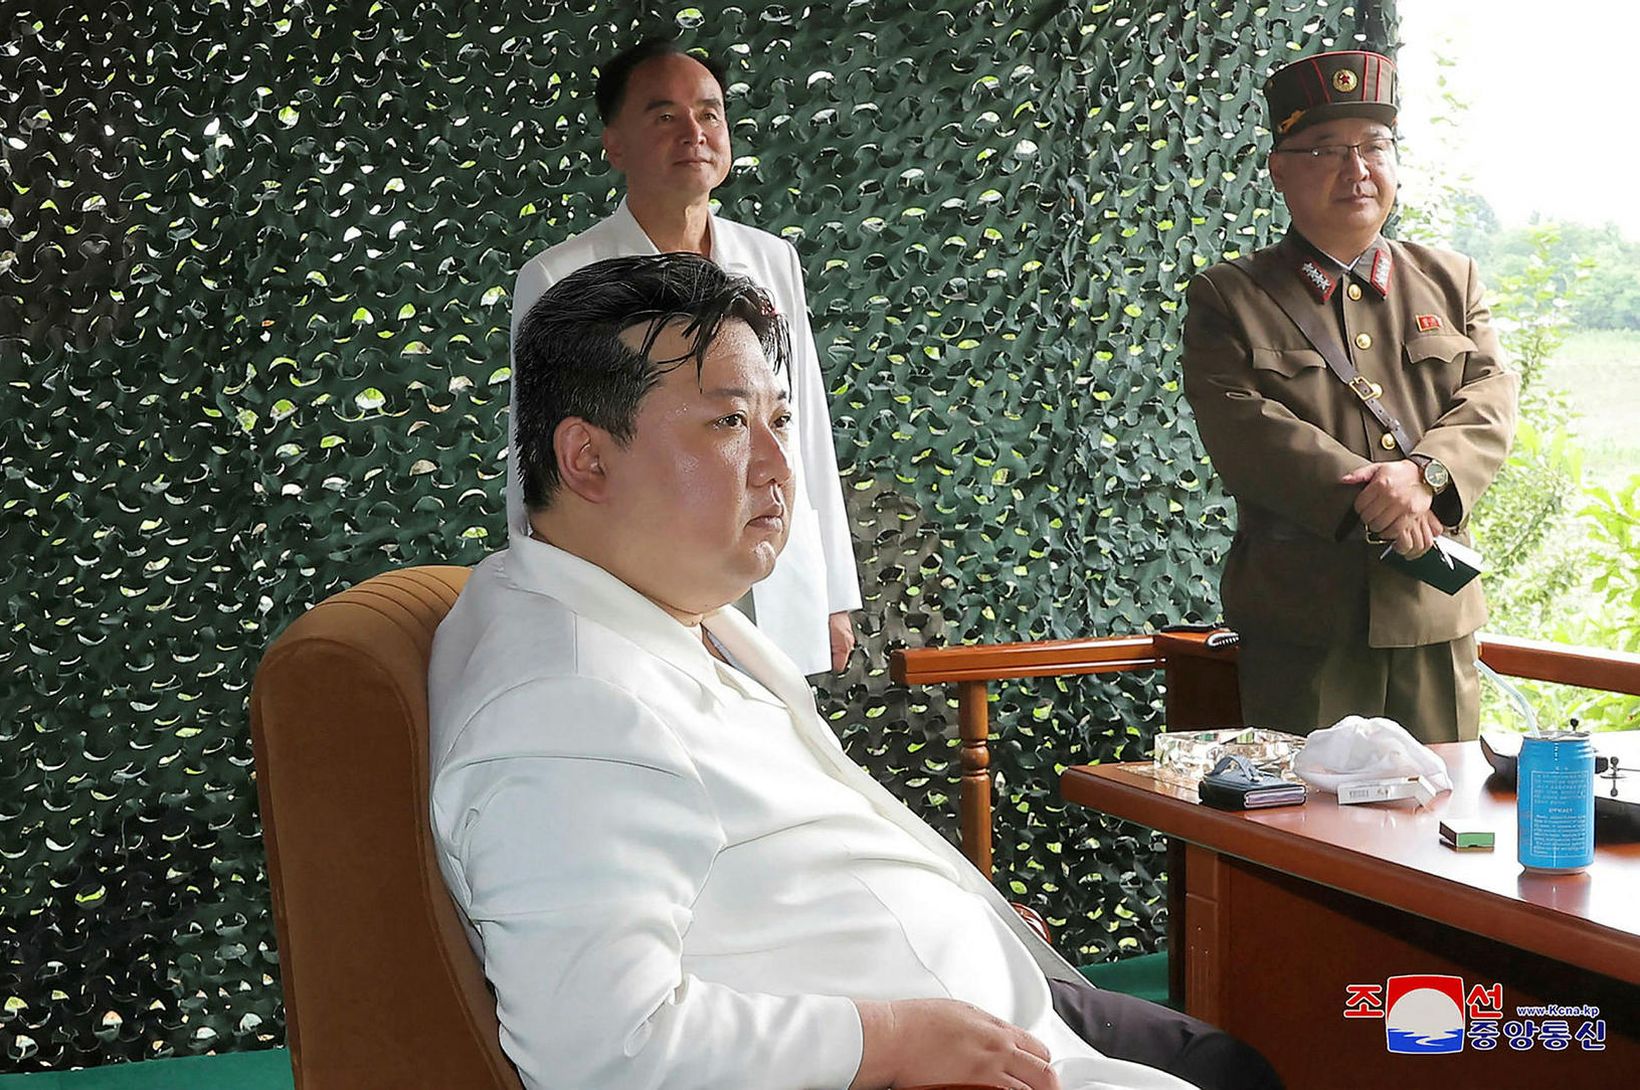 Kim Jong Un með óleyfilegan samlokusíma?